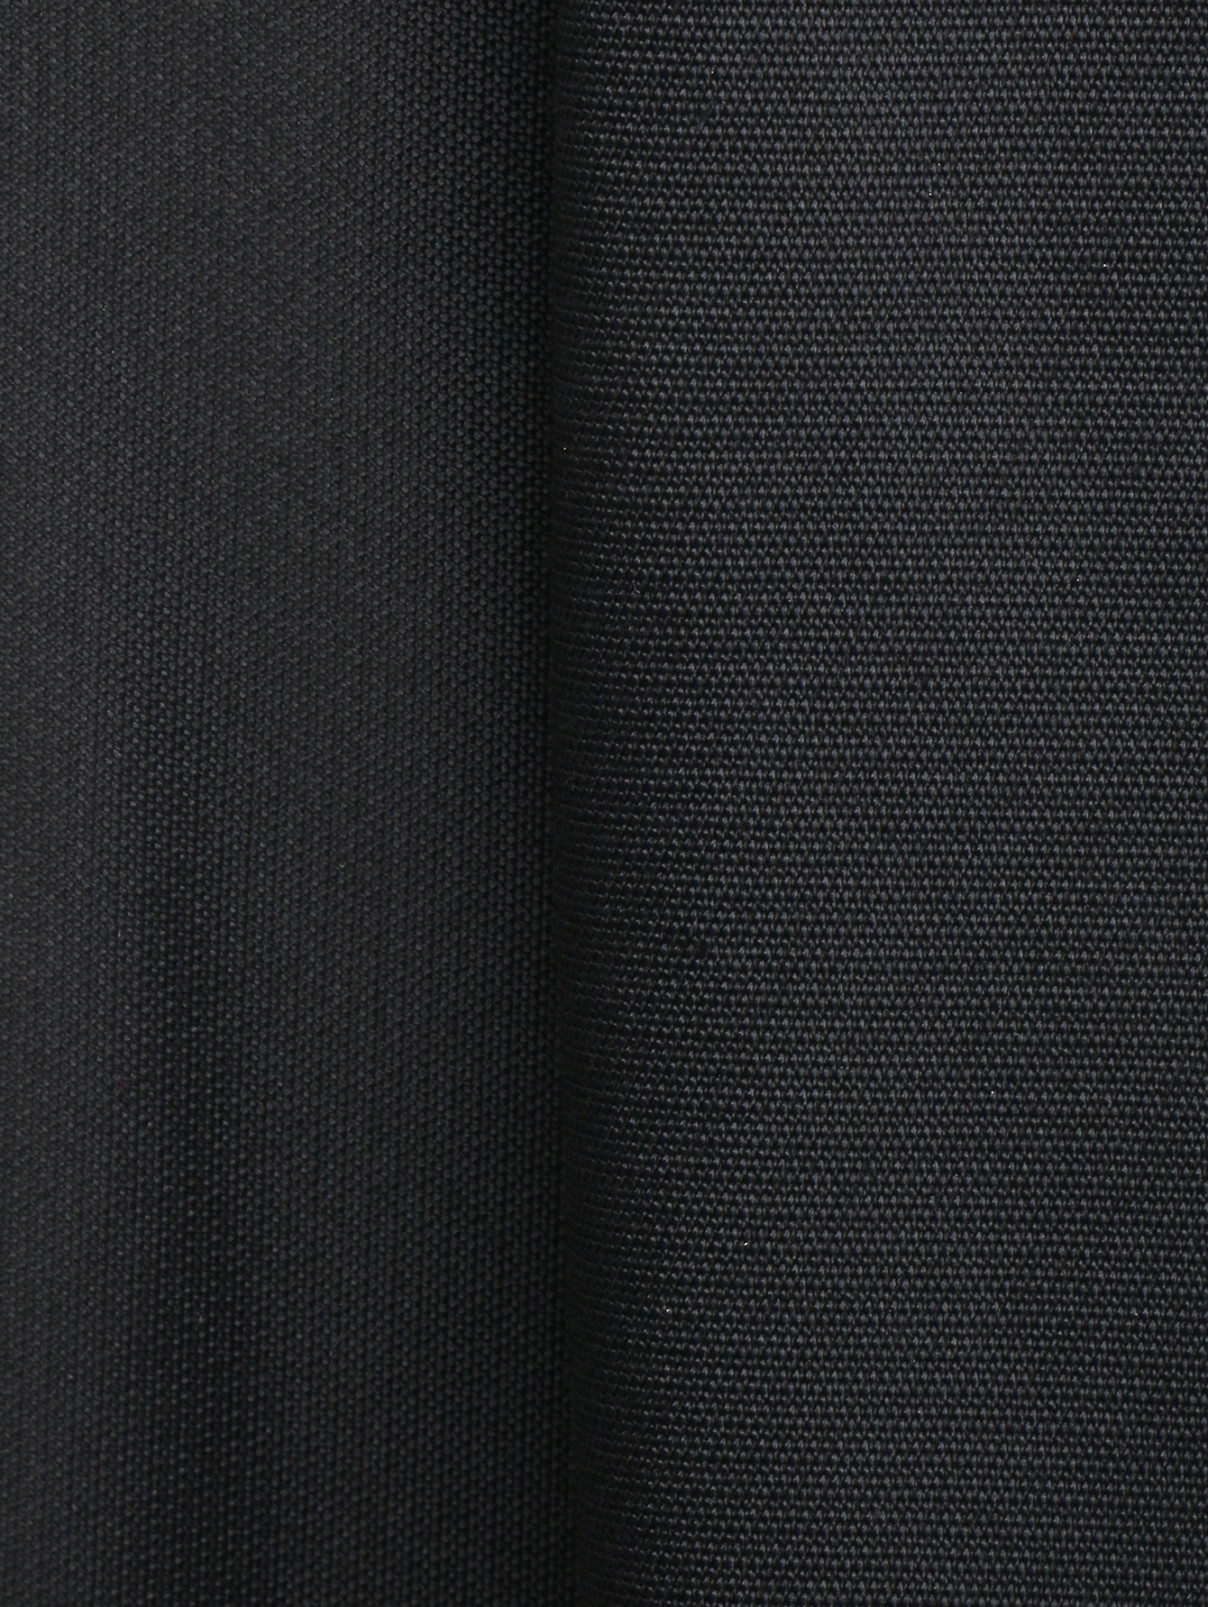 Юбка-мини с драпировкой Alberta Ferretti  –  Деталь  – Цвет:  Черный